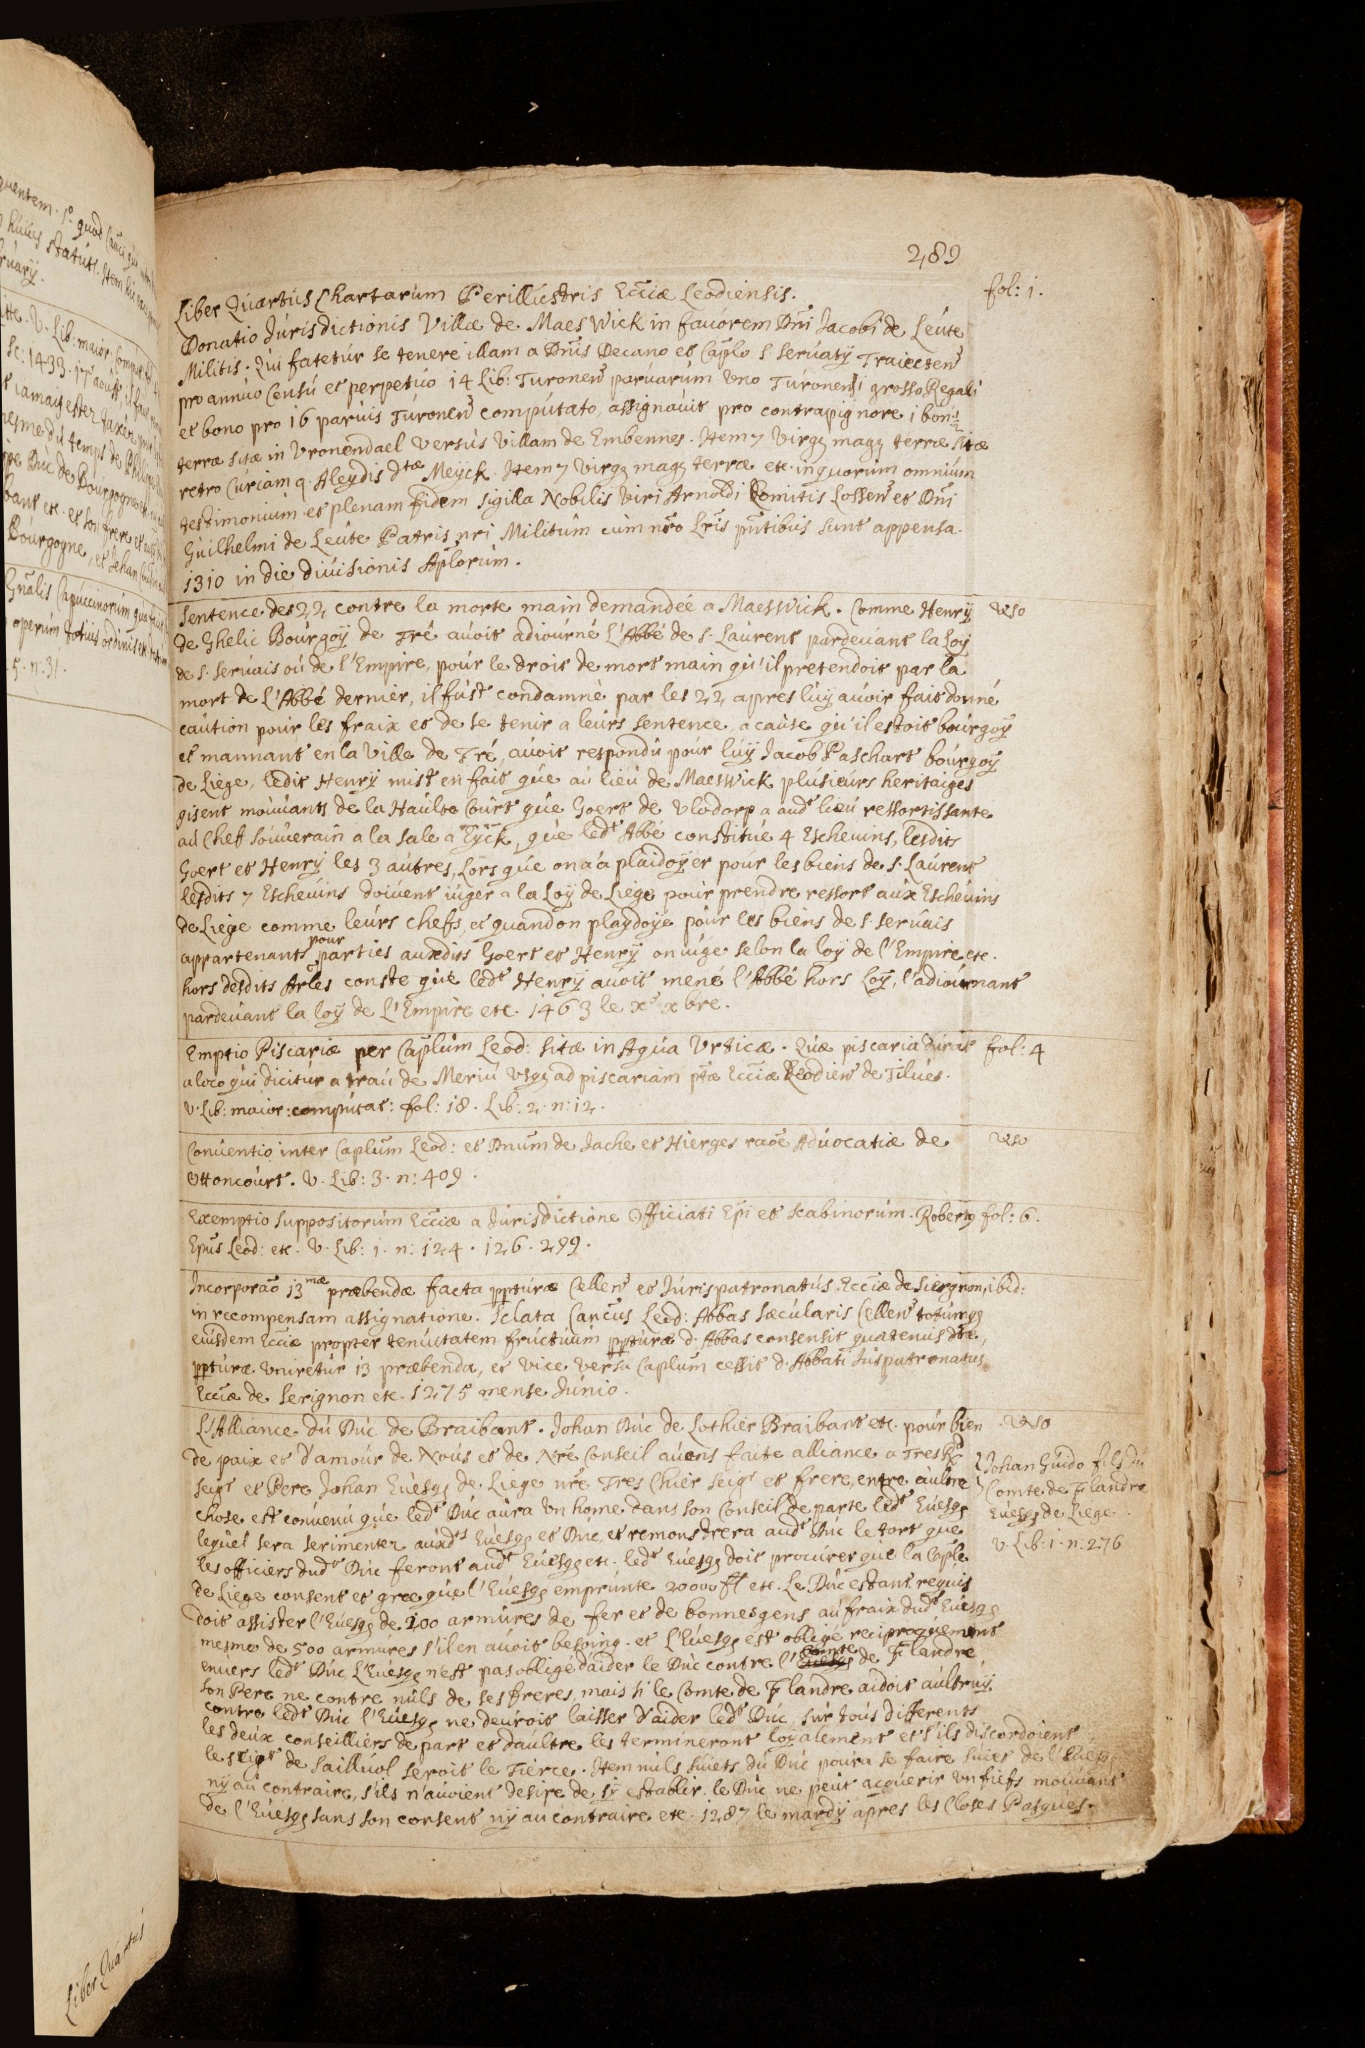 Extractum ex libro primo chartatum ecclesiae Leodiensis conscripto de mandato capituli